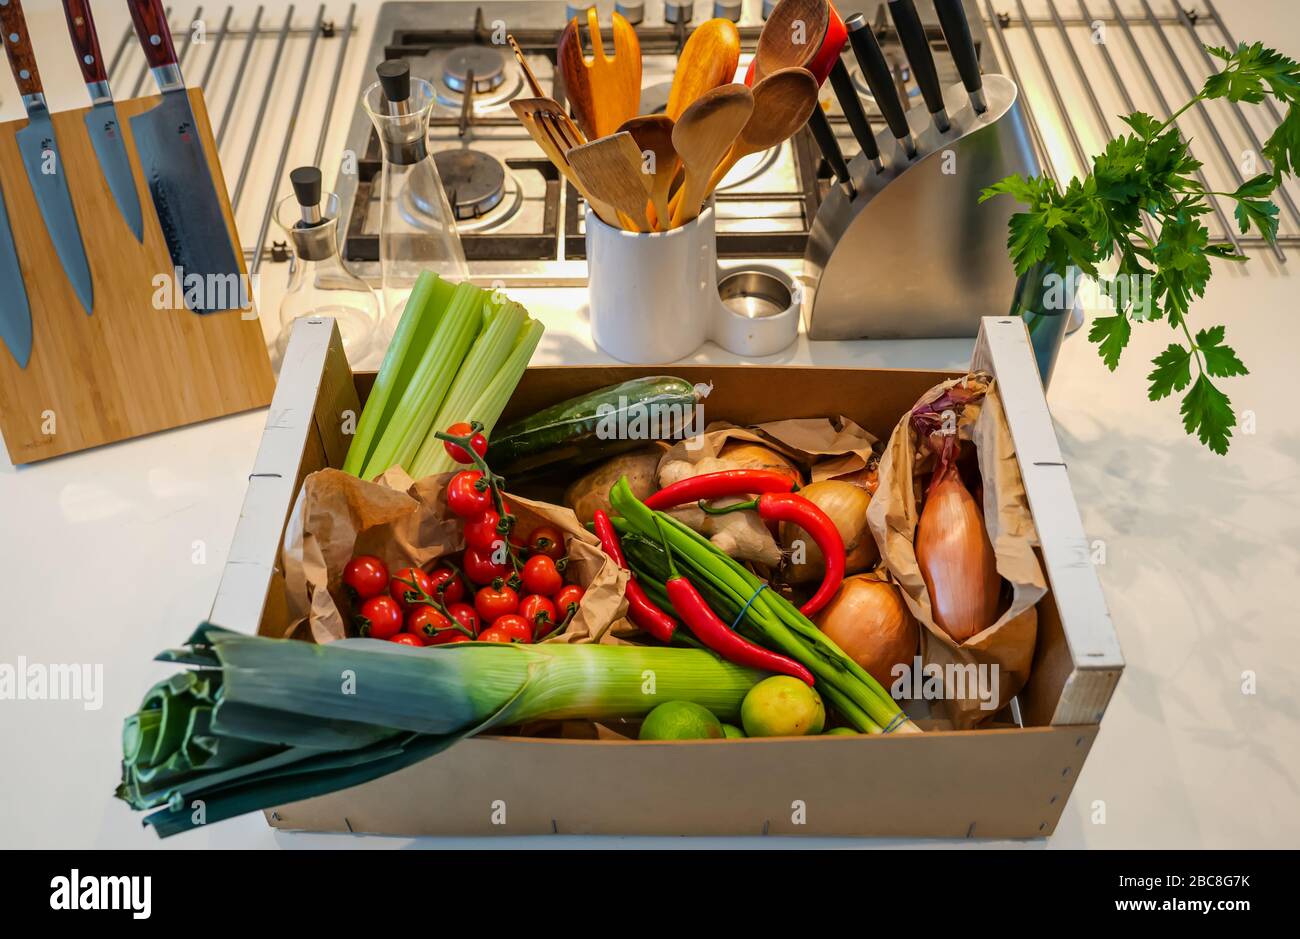 Livraison locale de légumes frais sur le comptoir de cuisine: Céleri, tomates cerises, poireaux, oignons, pommes de terre, chilis rouges, oignons de printemps et limes Banque D'Images